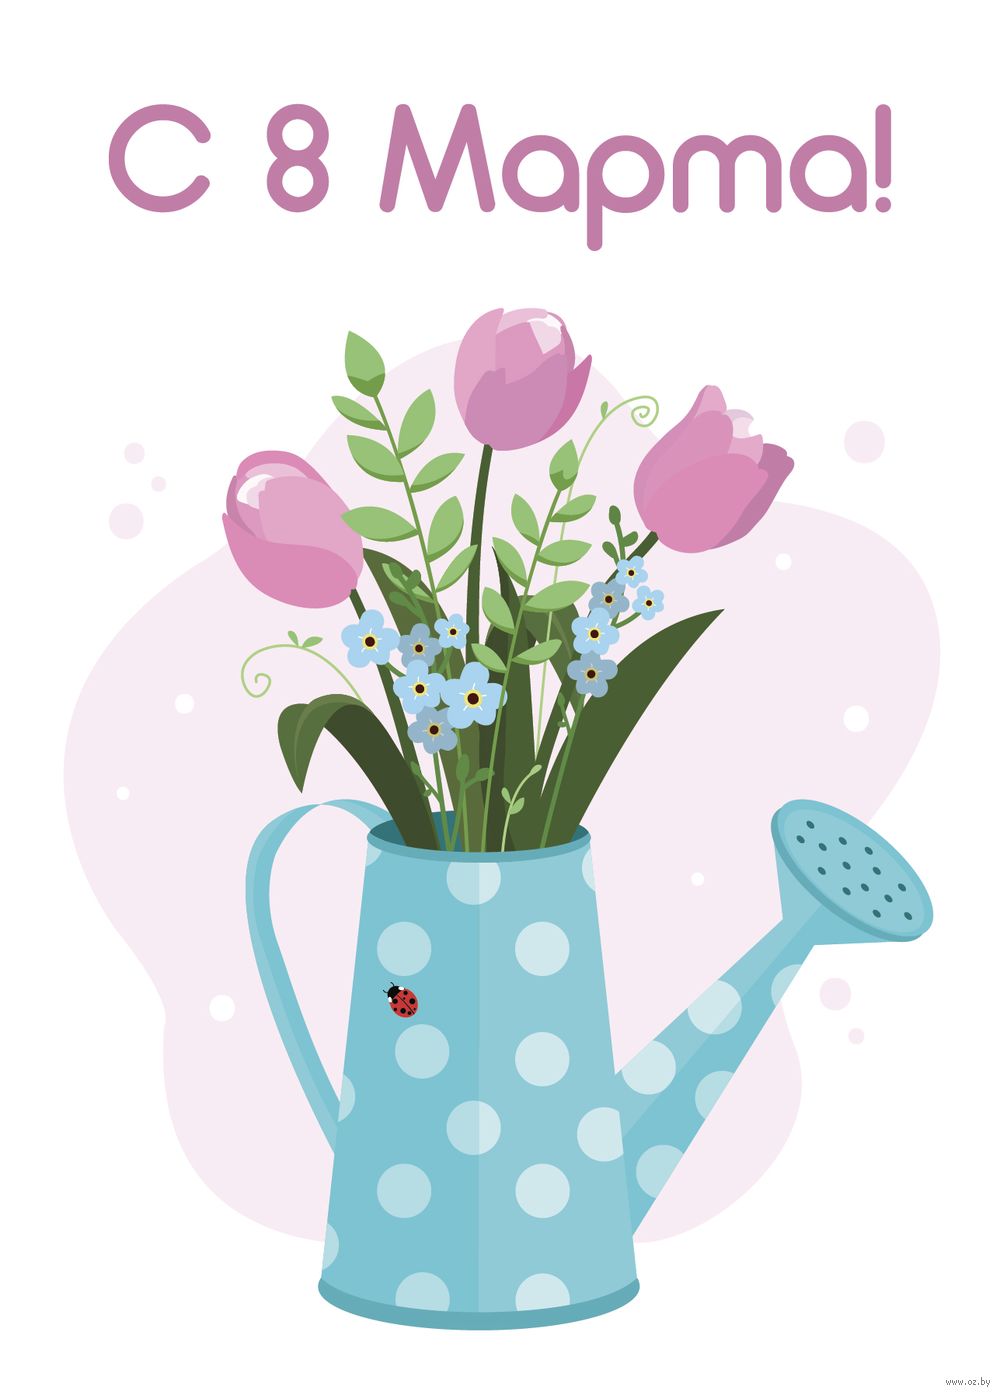 Международный женский день красивые открытки и поздравления к 8 марта | АиФ Пермь